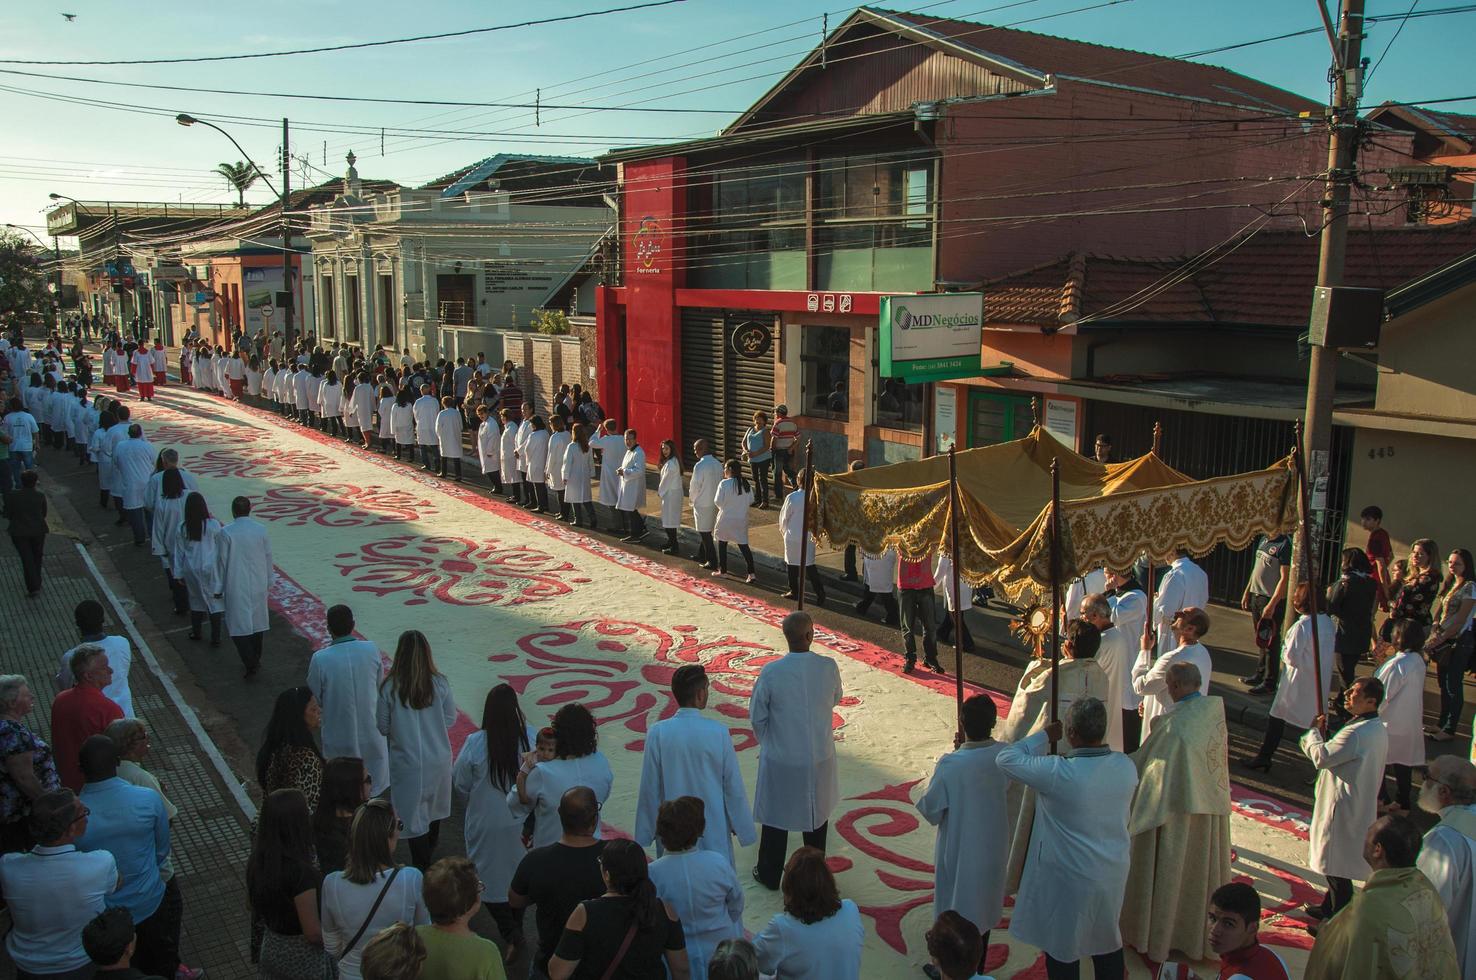 sao manuel, brasilien - 31 maj 2018. folksamling med religiös procession som passerar en färgglad sandmatta vid firandet av heliga veckan i sao manuel. en liten stad på landsbygden i delstaten sao paulo. foto